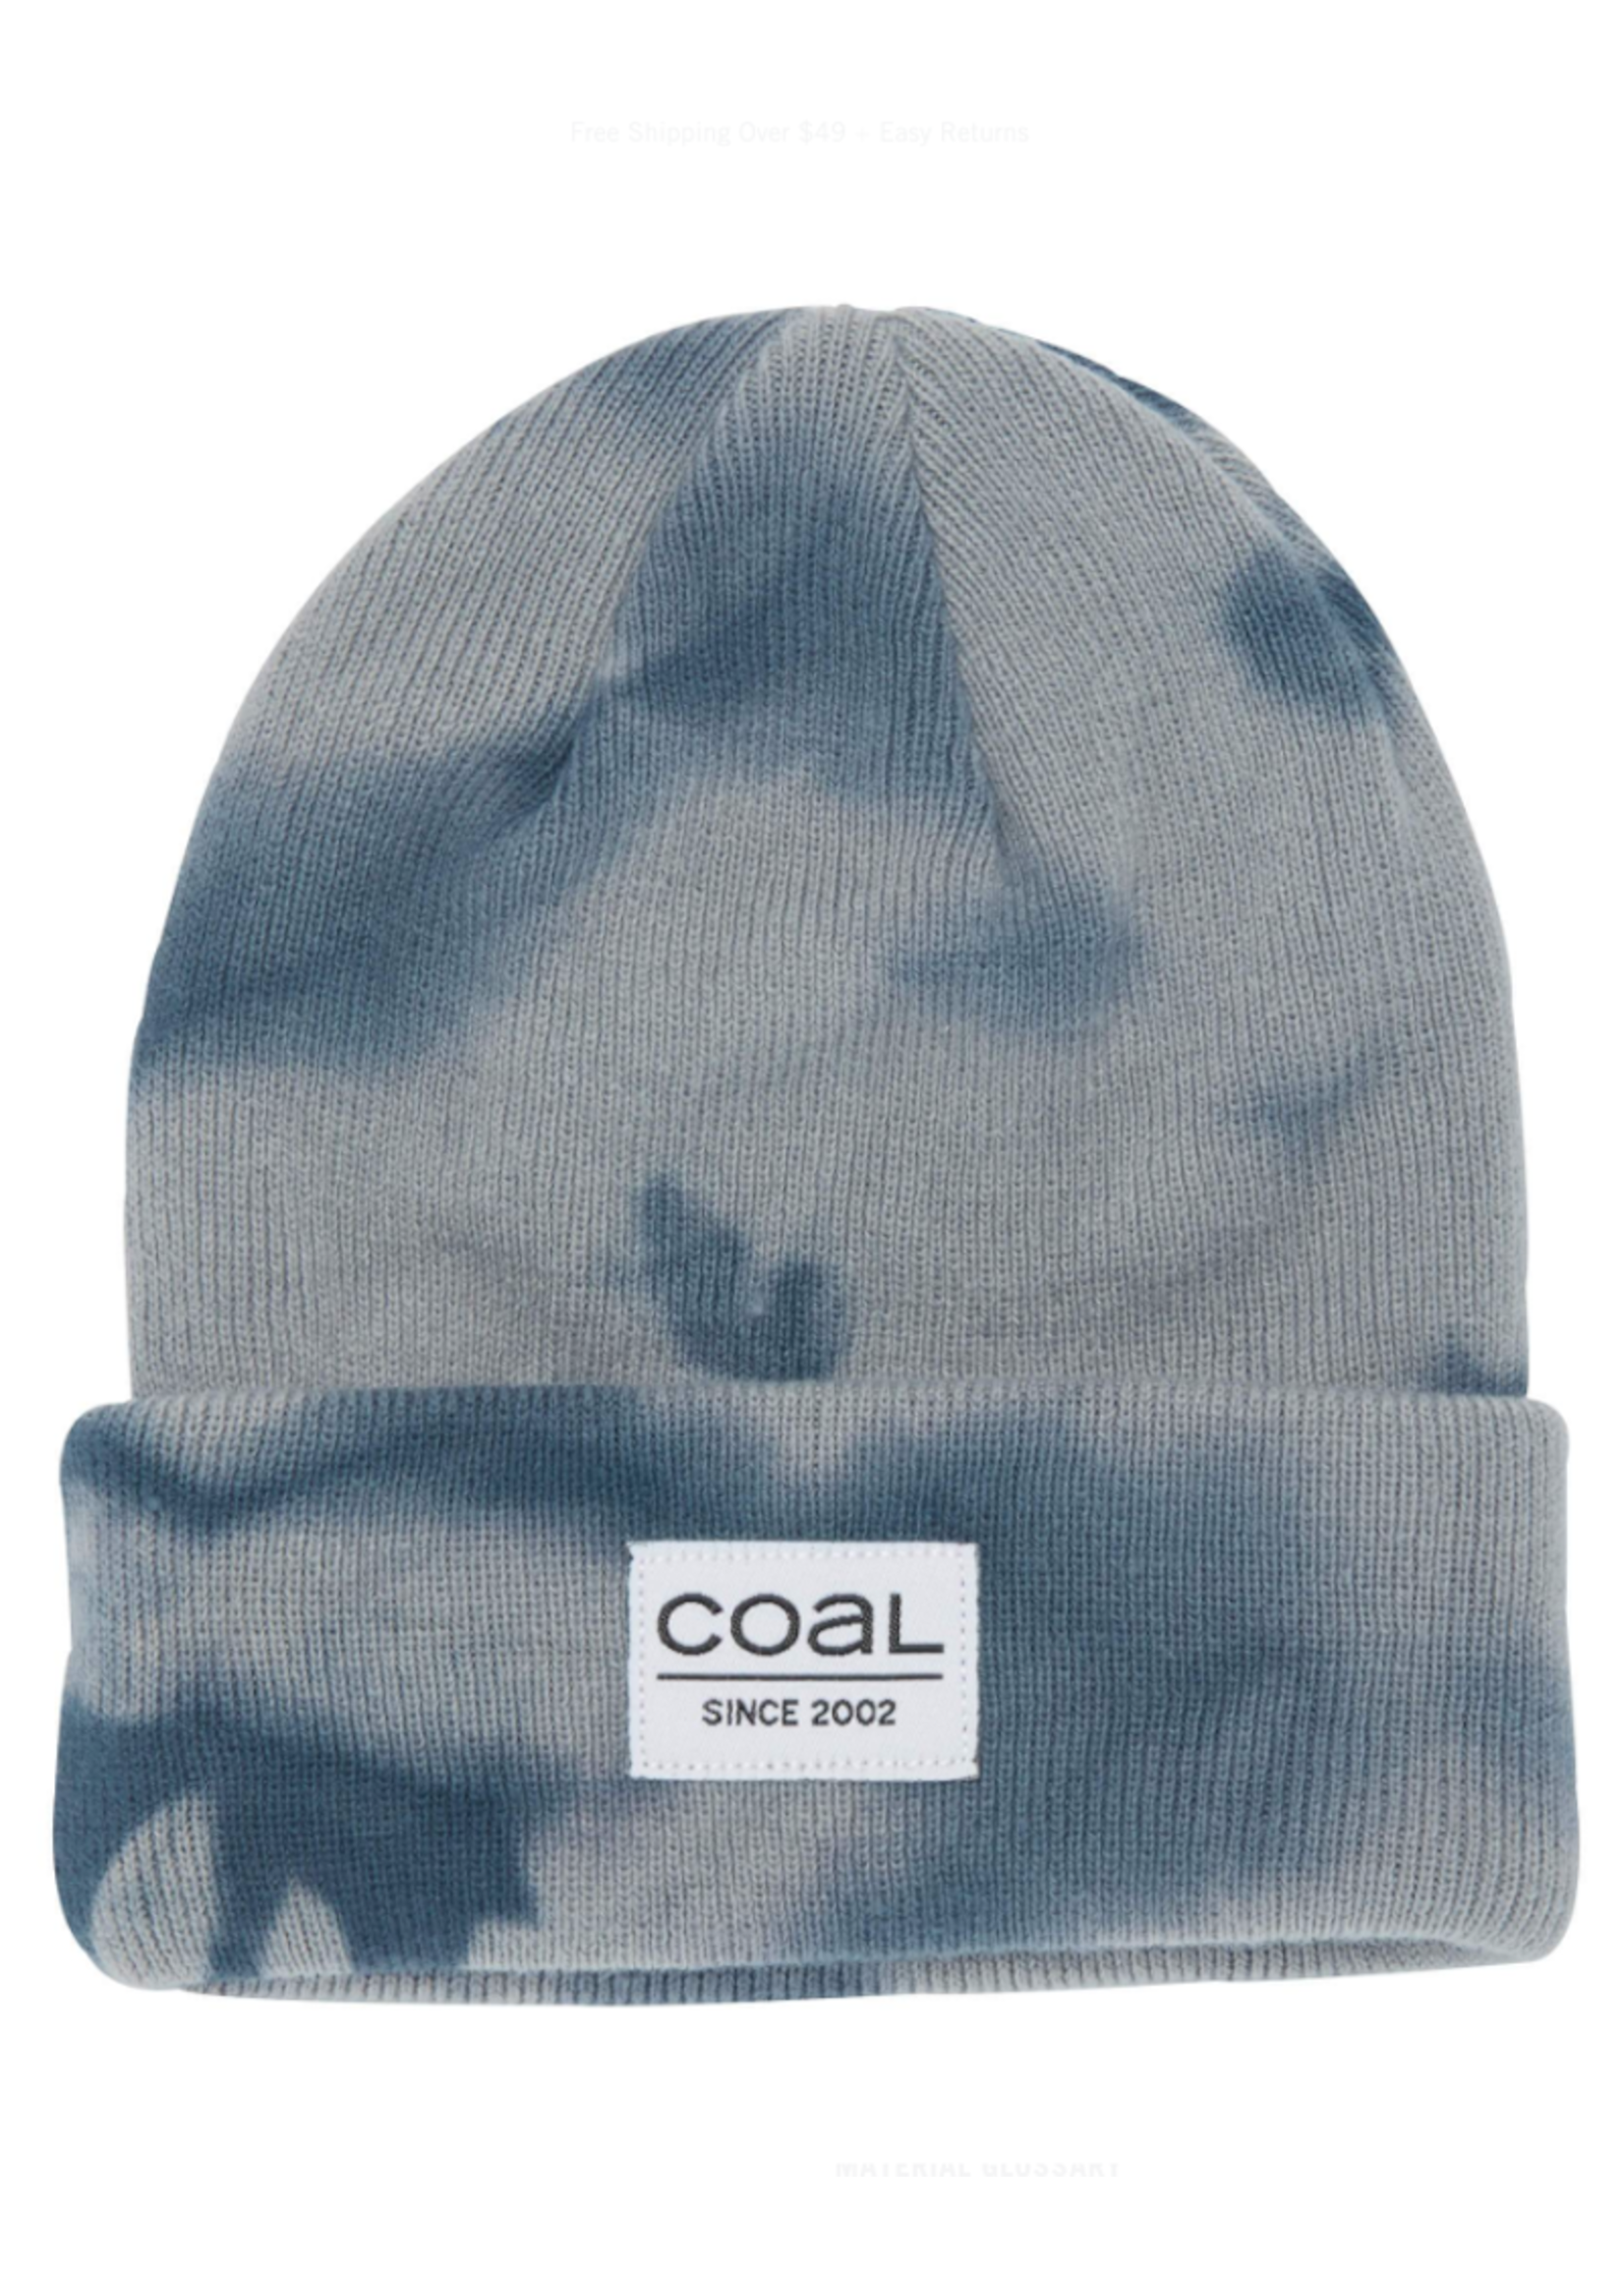 Coal Coal Headwear, The Standard Kids Beanie in Grey Tie Dye